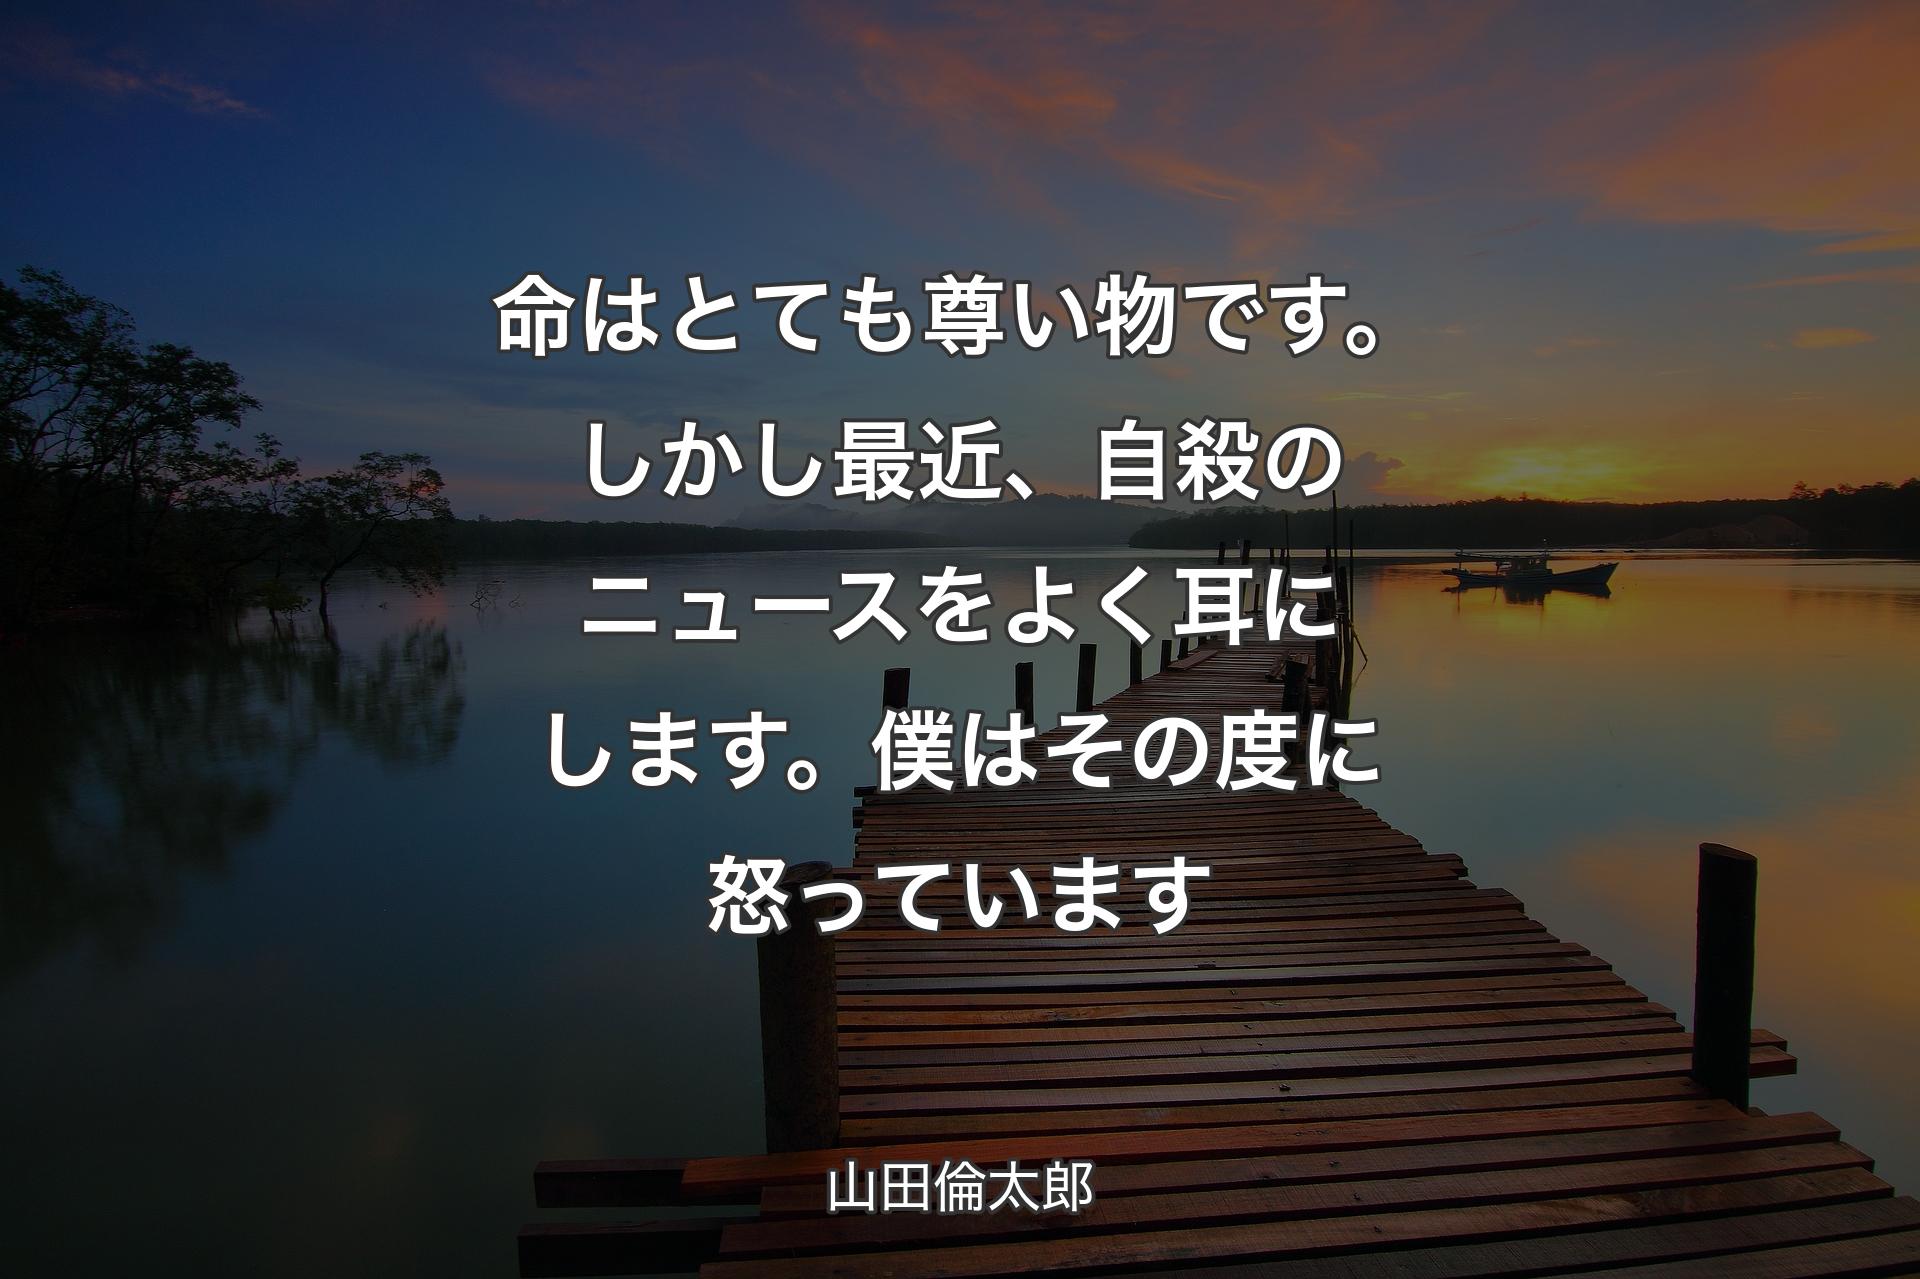 【背景3】命はとても尊い物です。しかし最近、自殺のニュースをよく耳にします。僕はその度に怒っています - 山田倫太郎